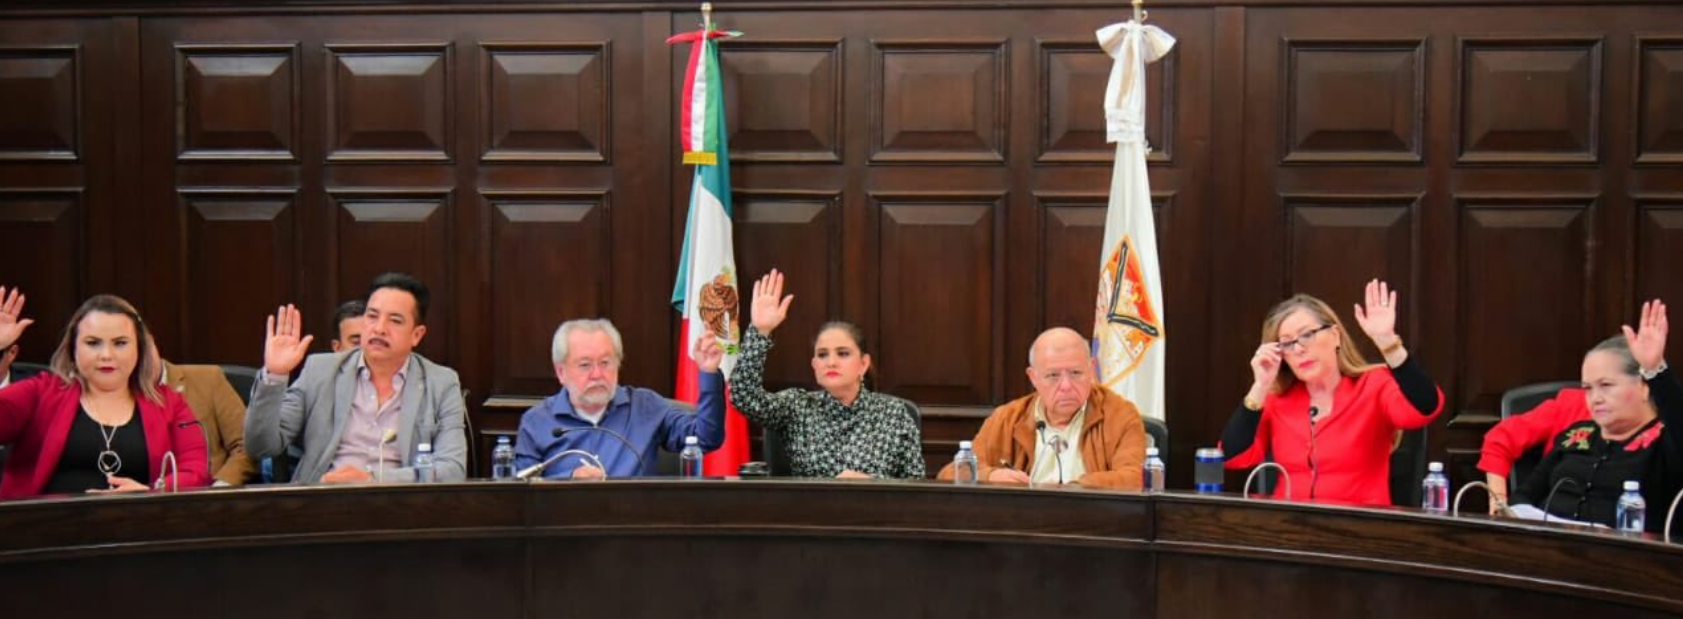 Aprueba Ayuntamiento de Hermosillo presupuesto 2020 sin nuevos impuestos